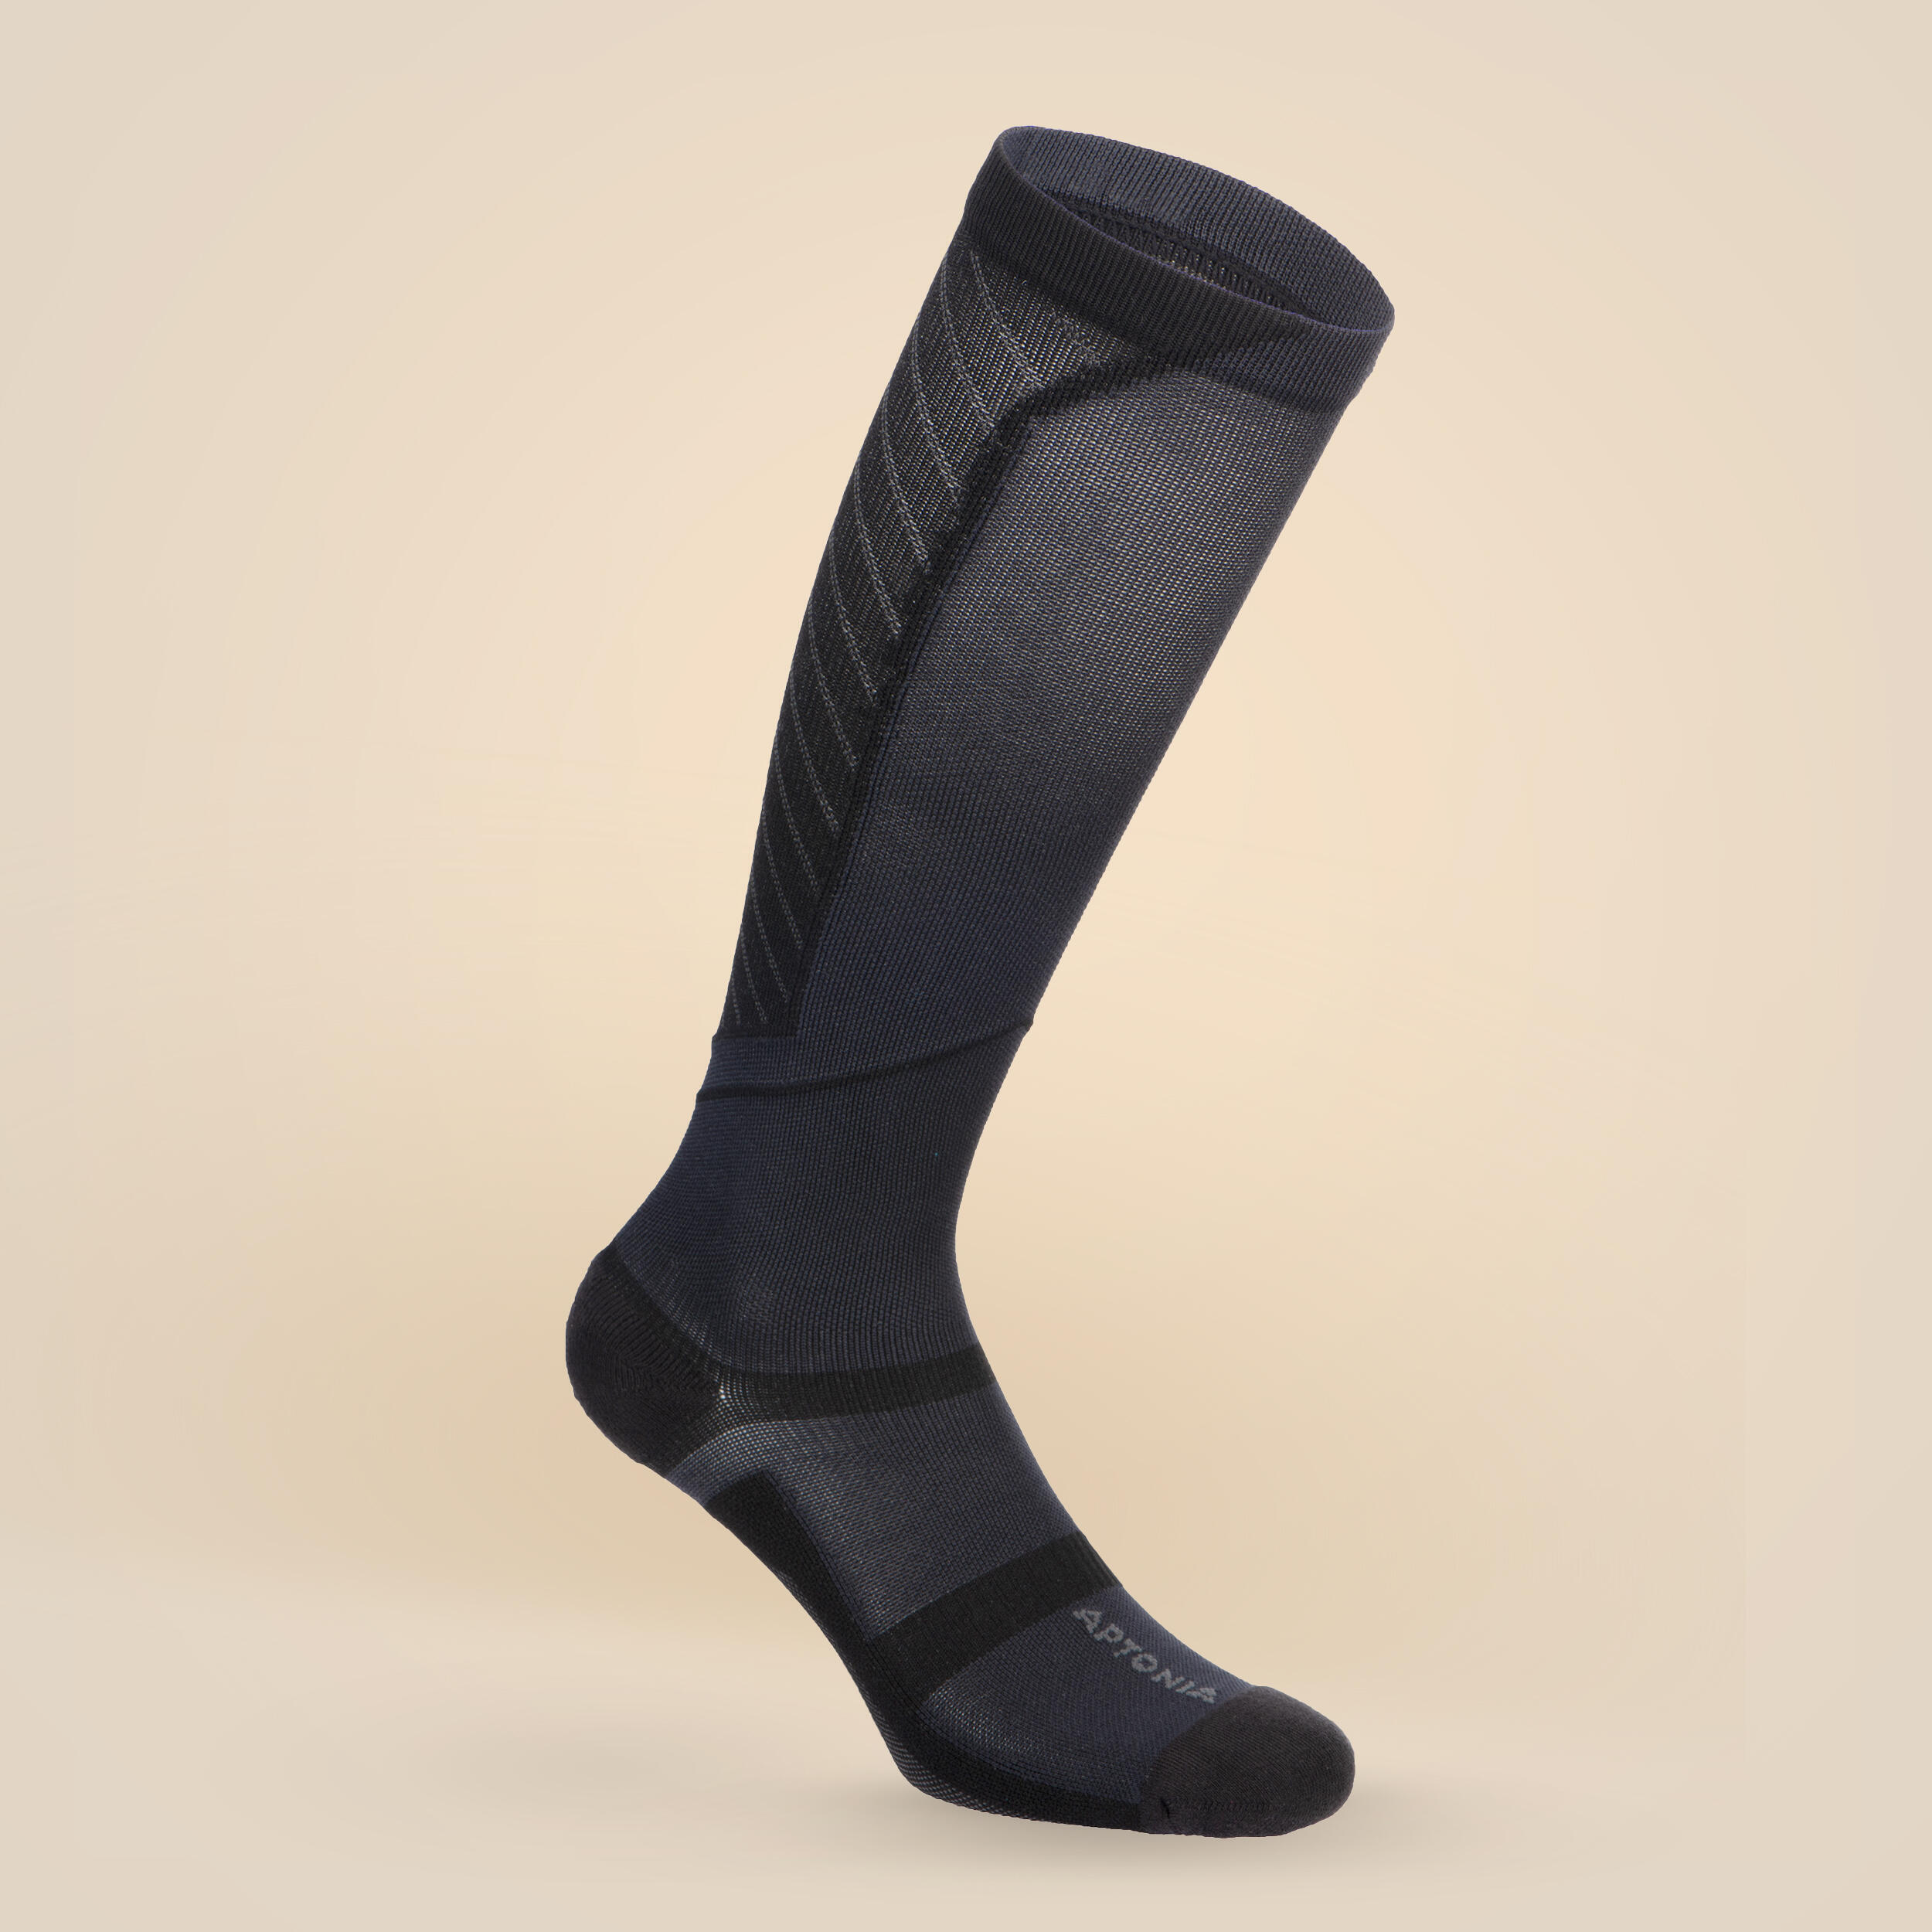 Компрессионные носки черные DECATHLON фабричные компрессионные носки компрессионные носки оптовая продажа компрессионные носки компрессионные носки